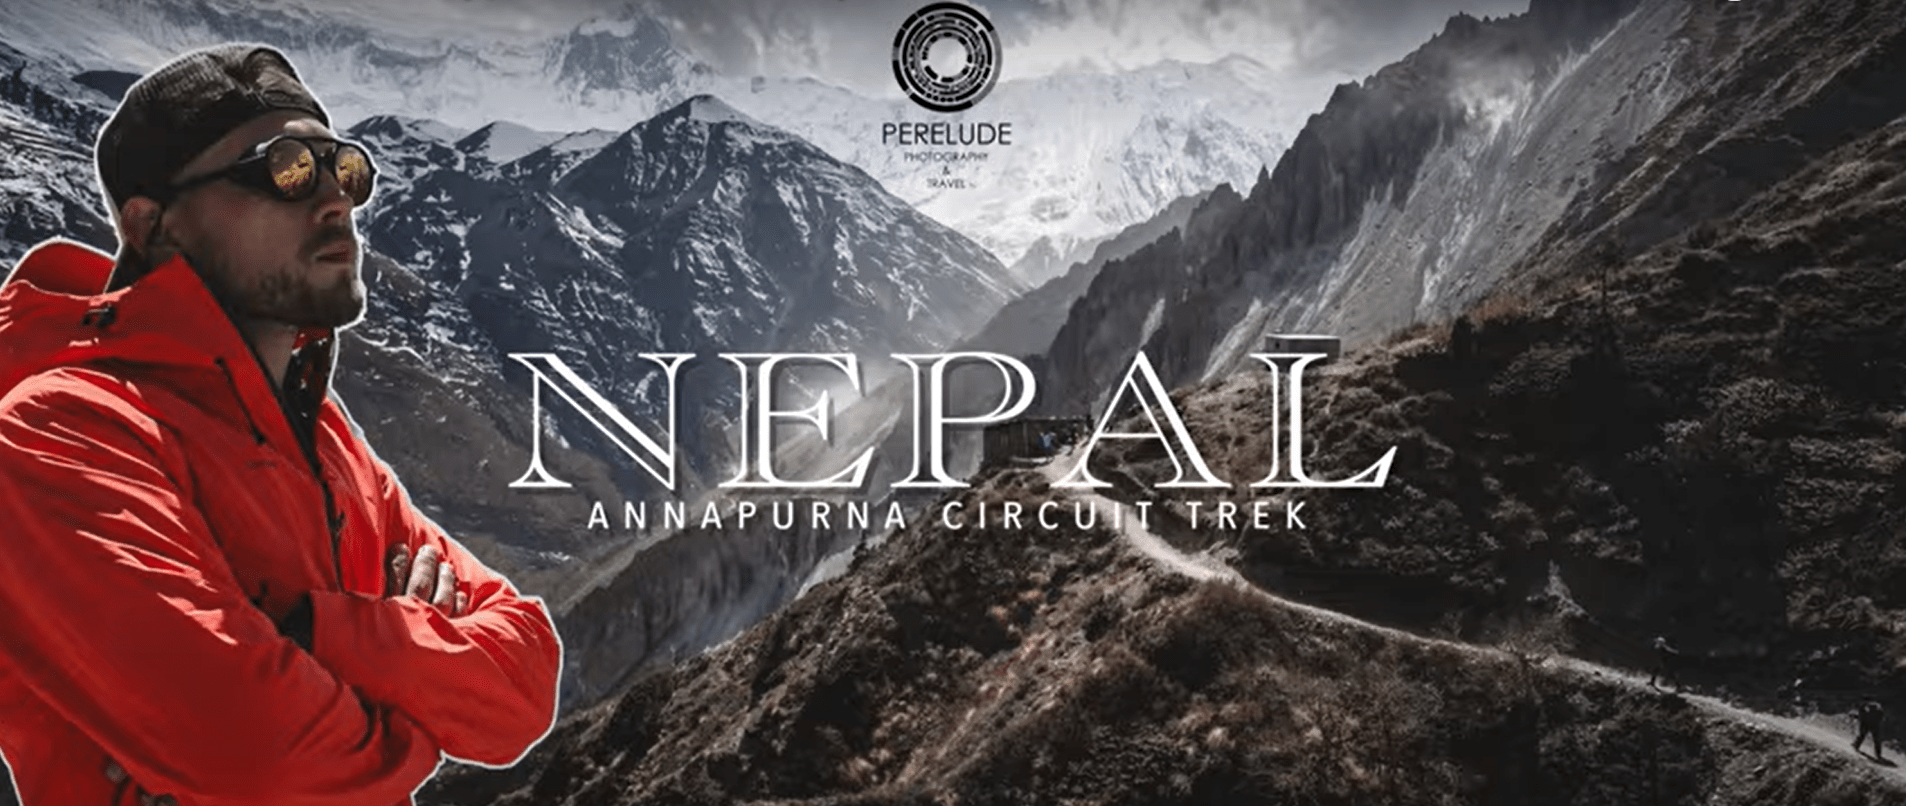 Трек вокруг Аннапурны. Непал. “Путешествие моей мечты” Гималаи глазами фотографа